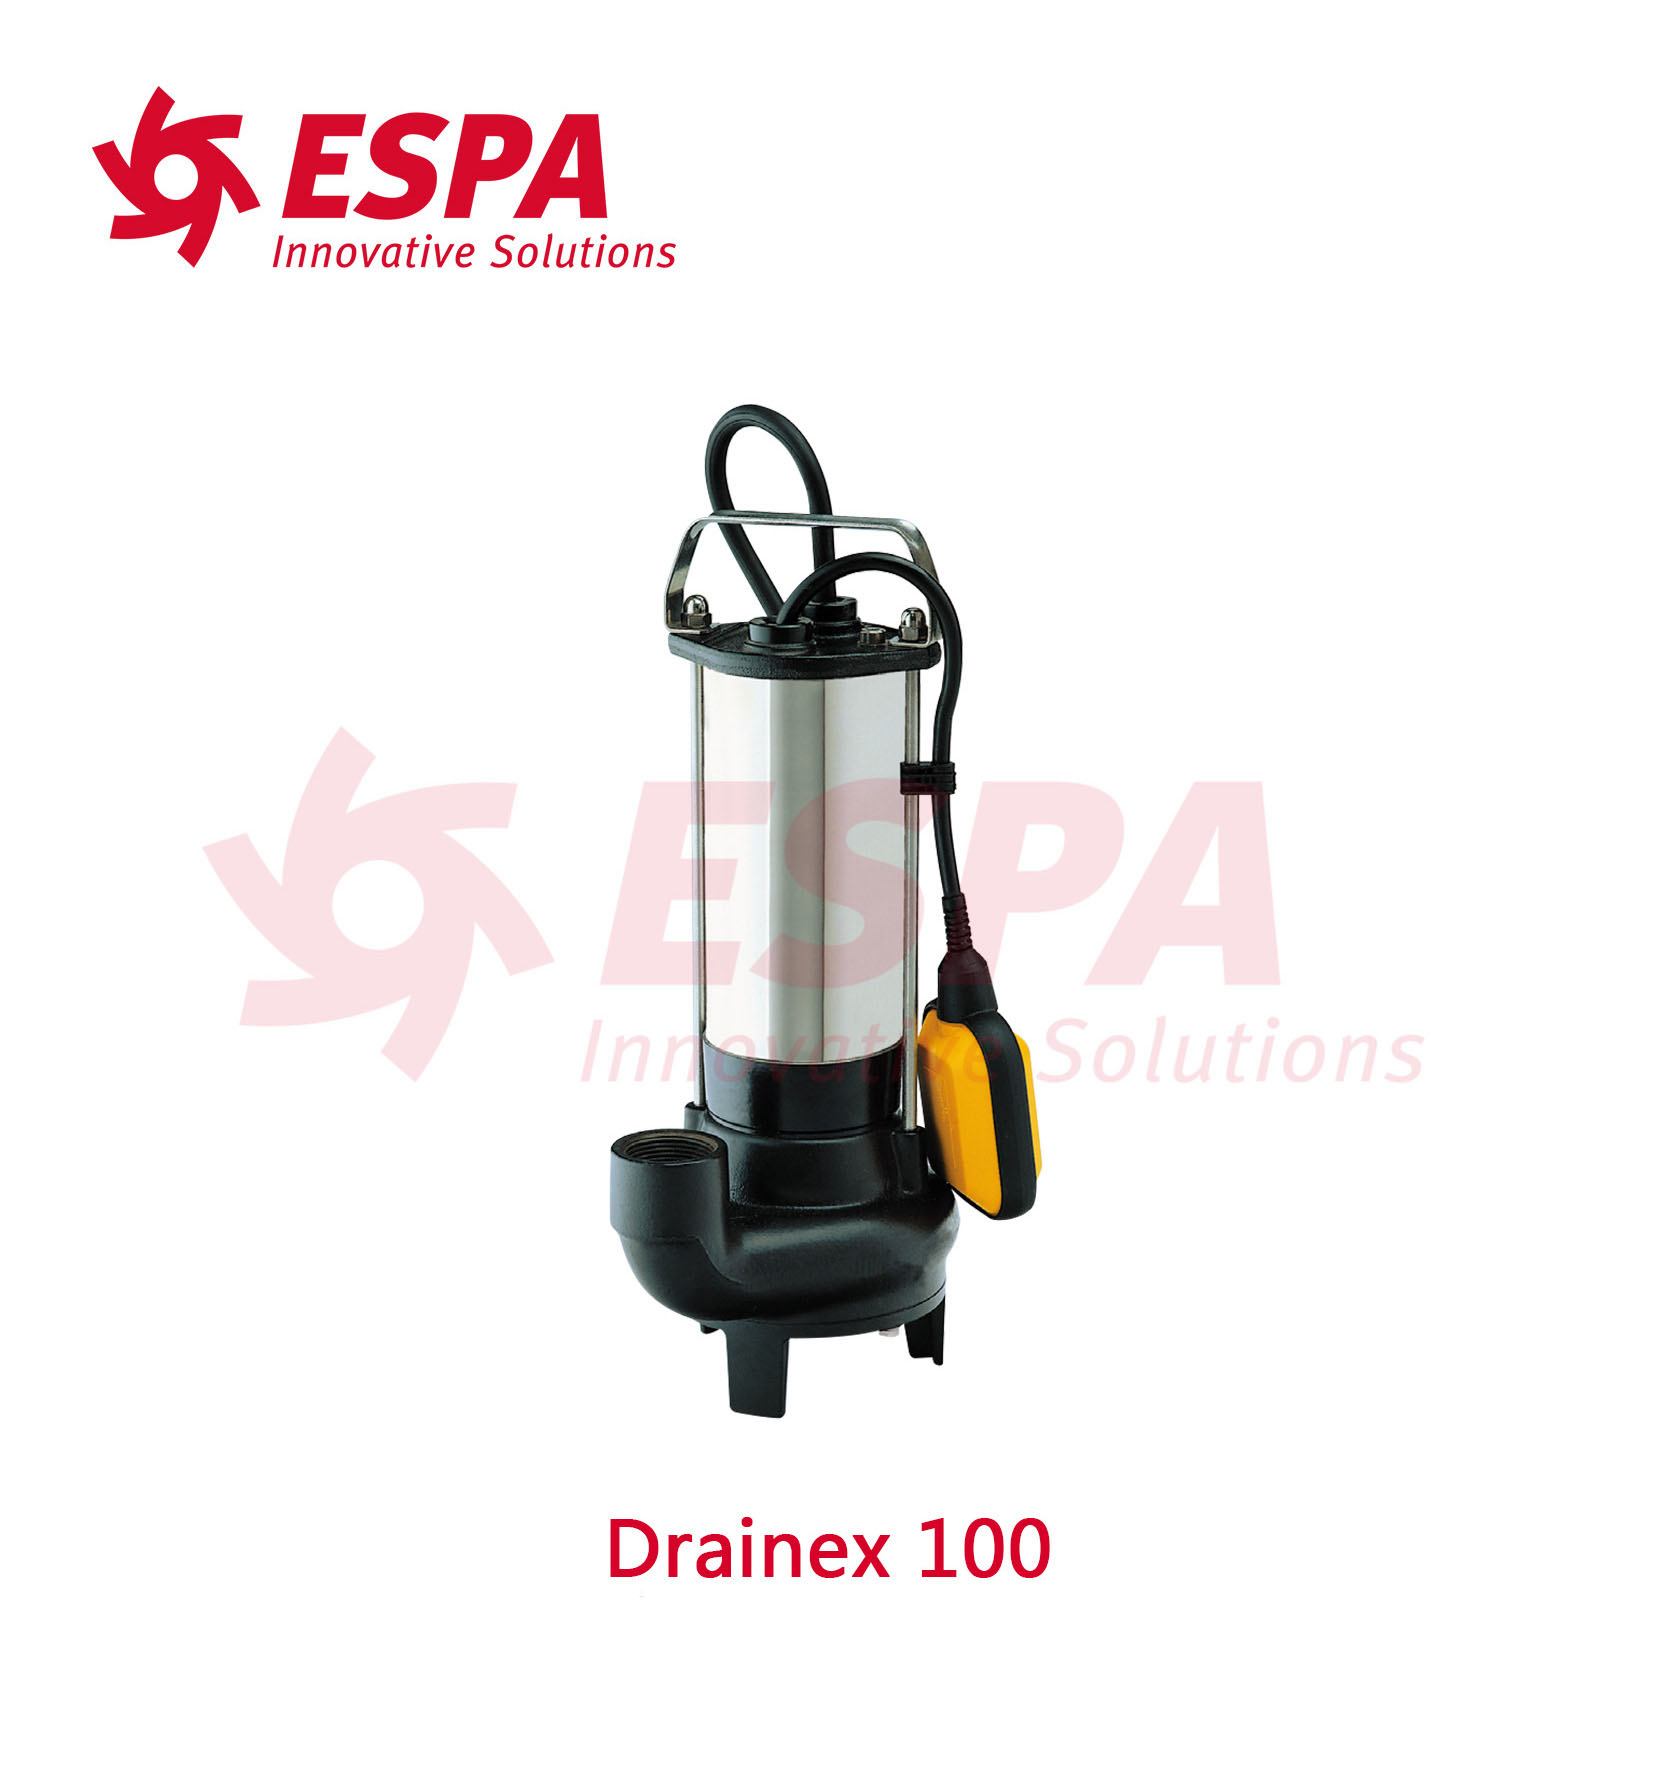 西班牙亚士霸ESPA排污泵潜污泵污水泵Drainex 100